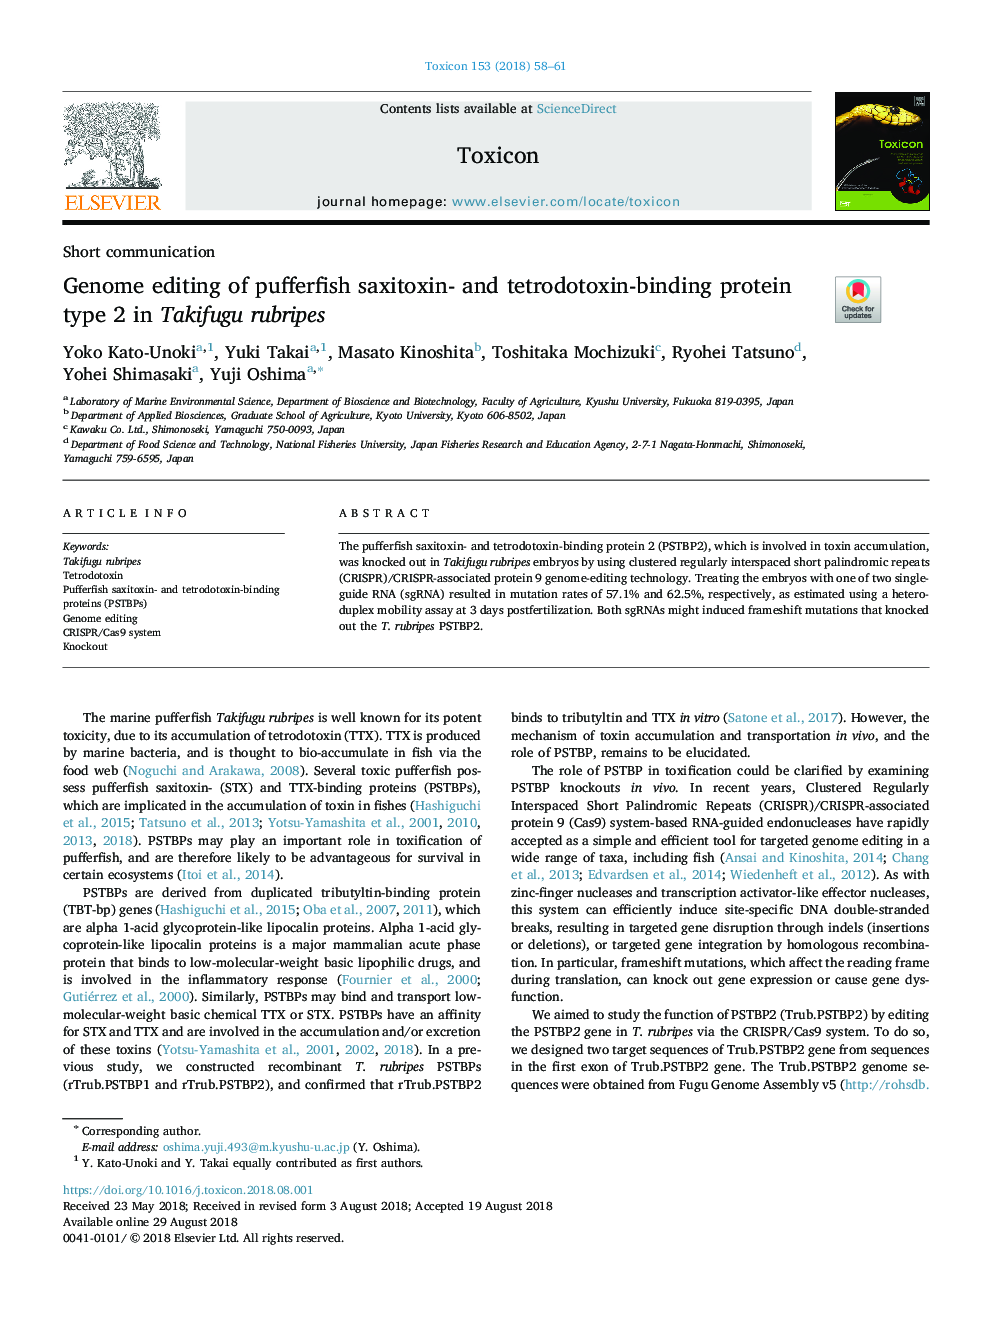 Genome editing of pufferfish saxitoxin- and tetrodotoxin-binding protein type 2 in Takifugu rubripes